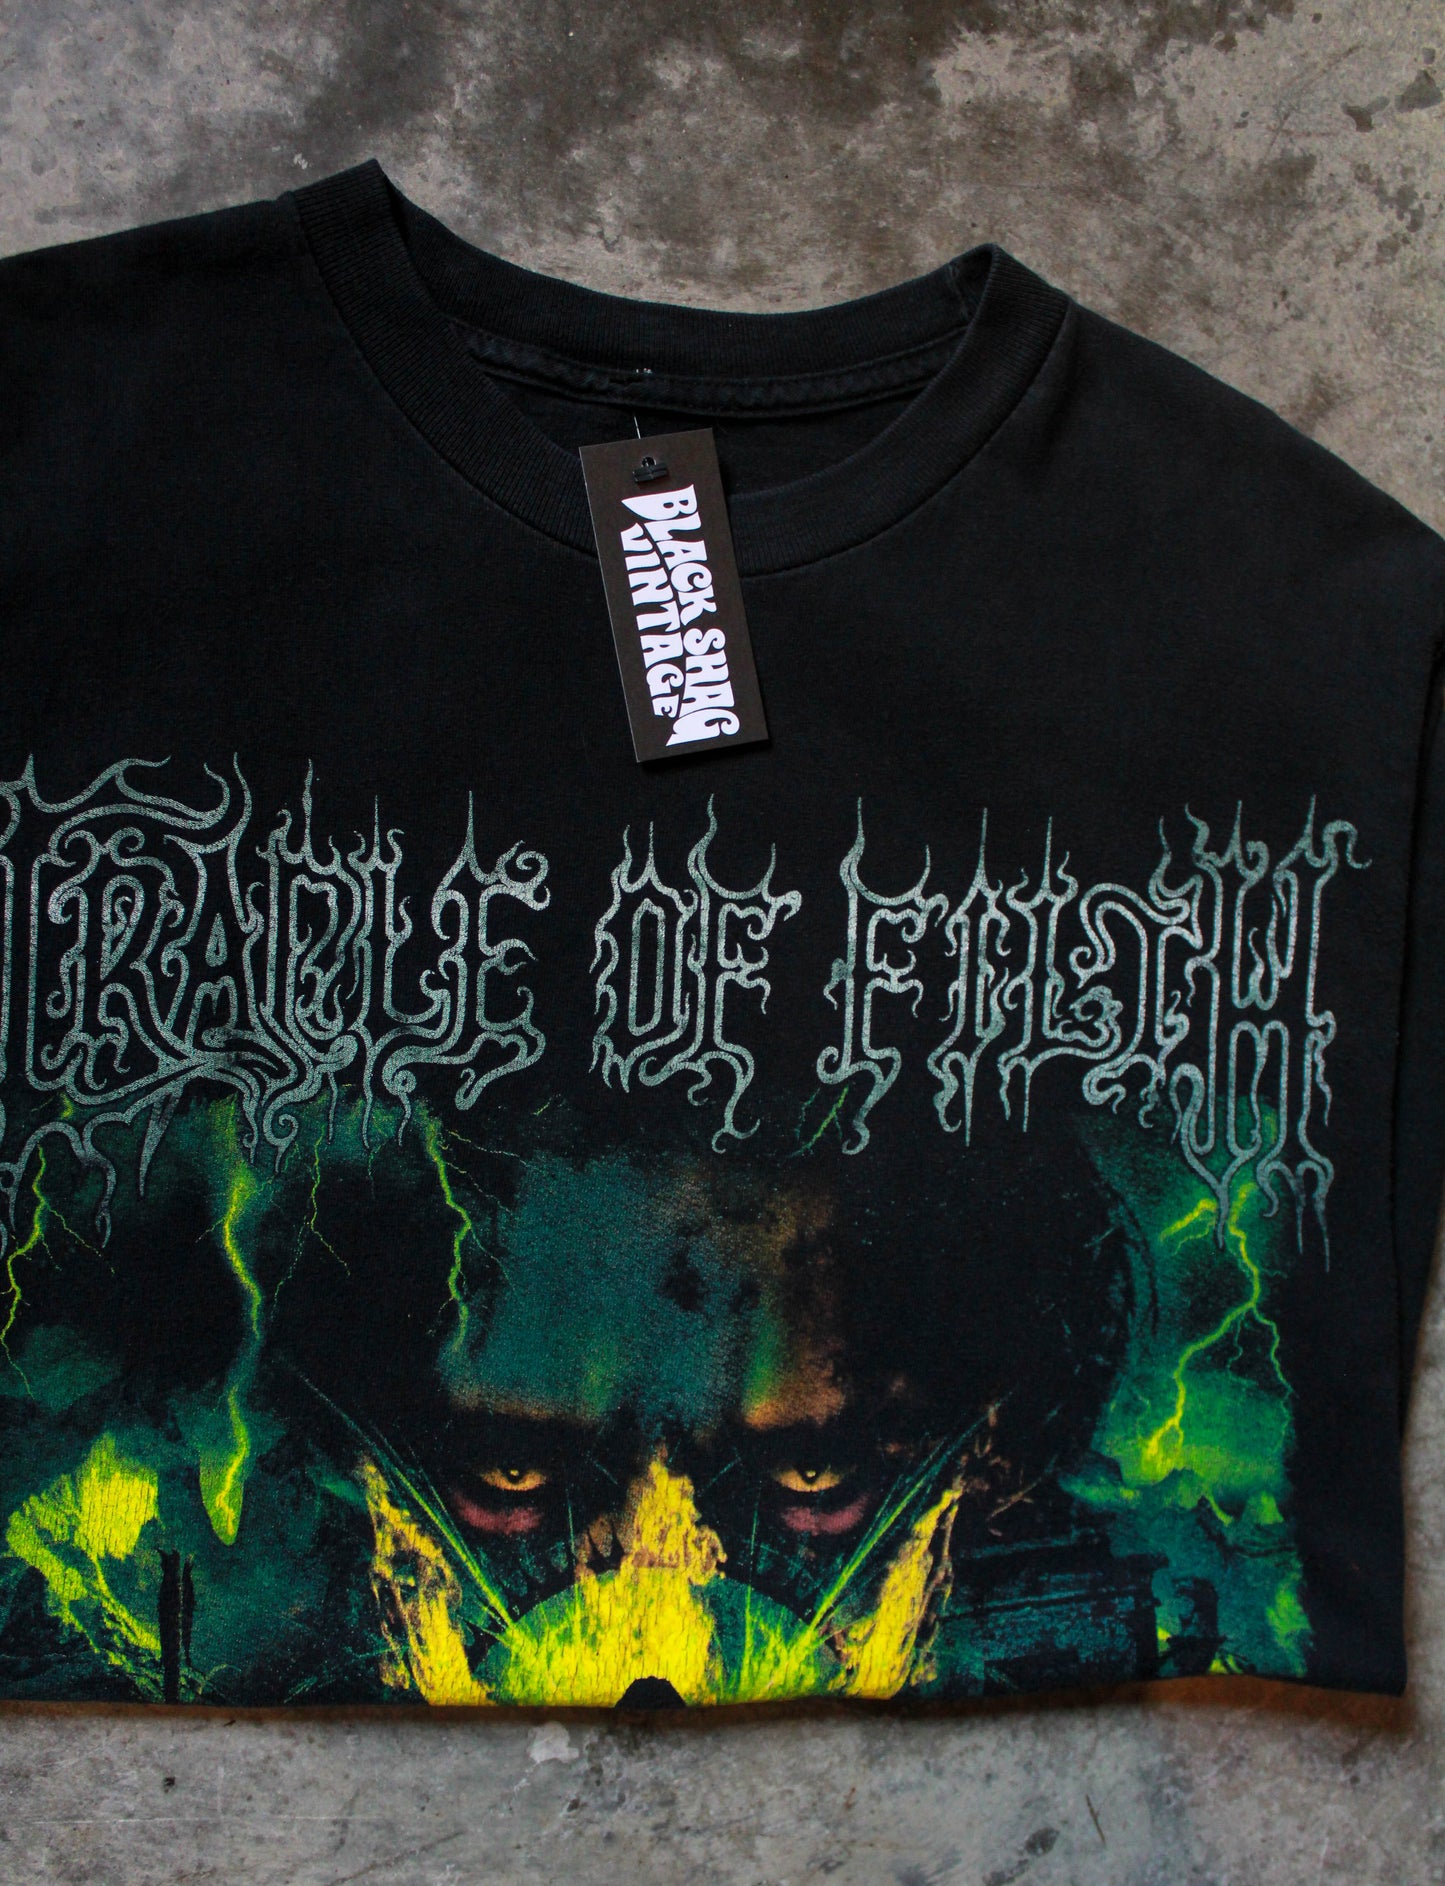 Vintage Cradle of Filth Concert T Shirt Damnation Cut Off Black Unisex Large